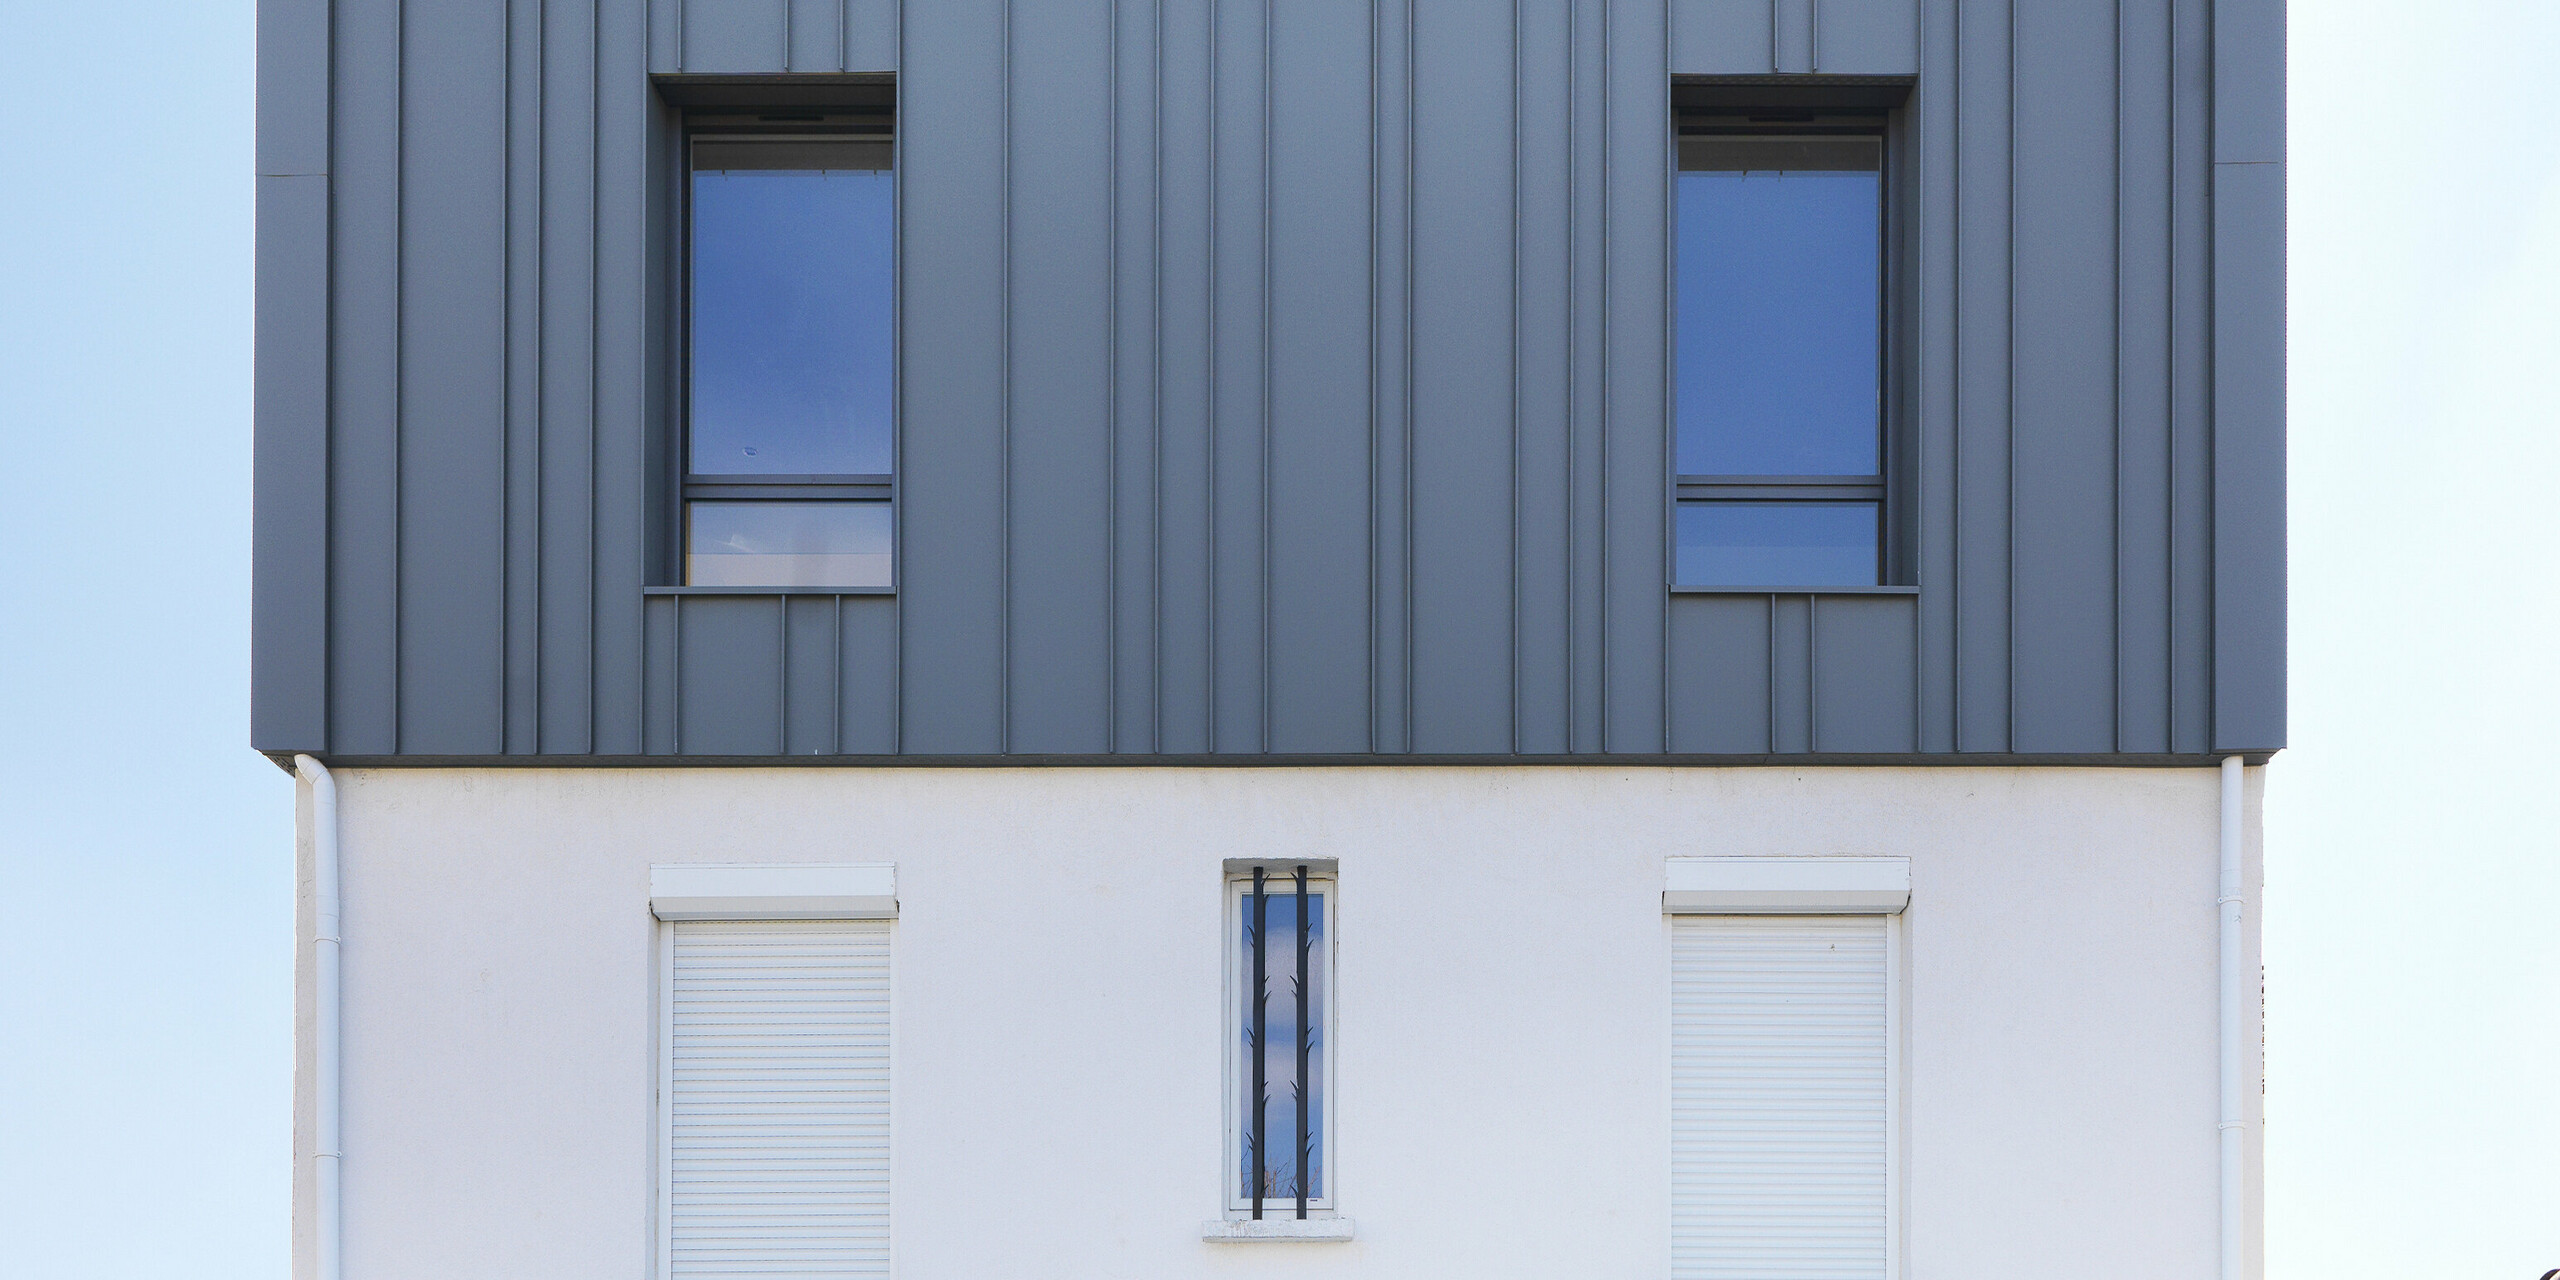 Pogled na fasado PREFALZ v P.10 svetlo sivi barvi.